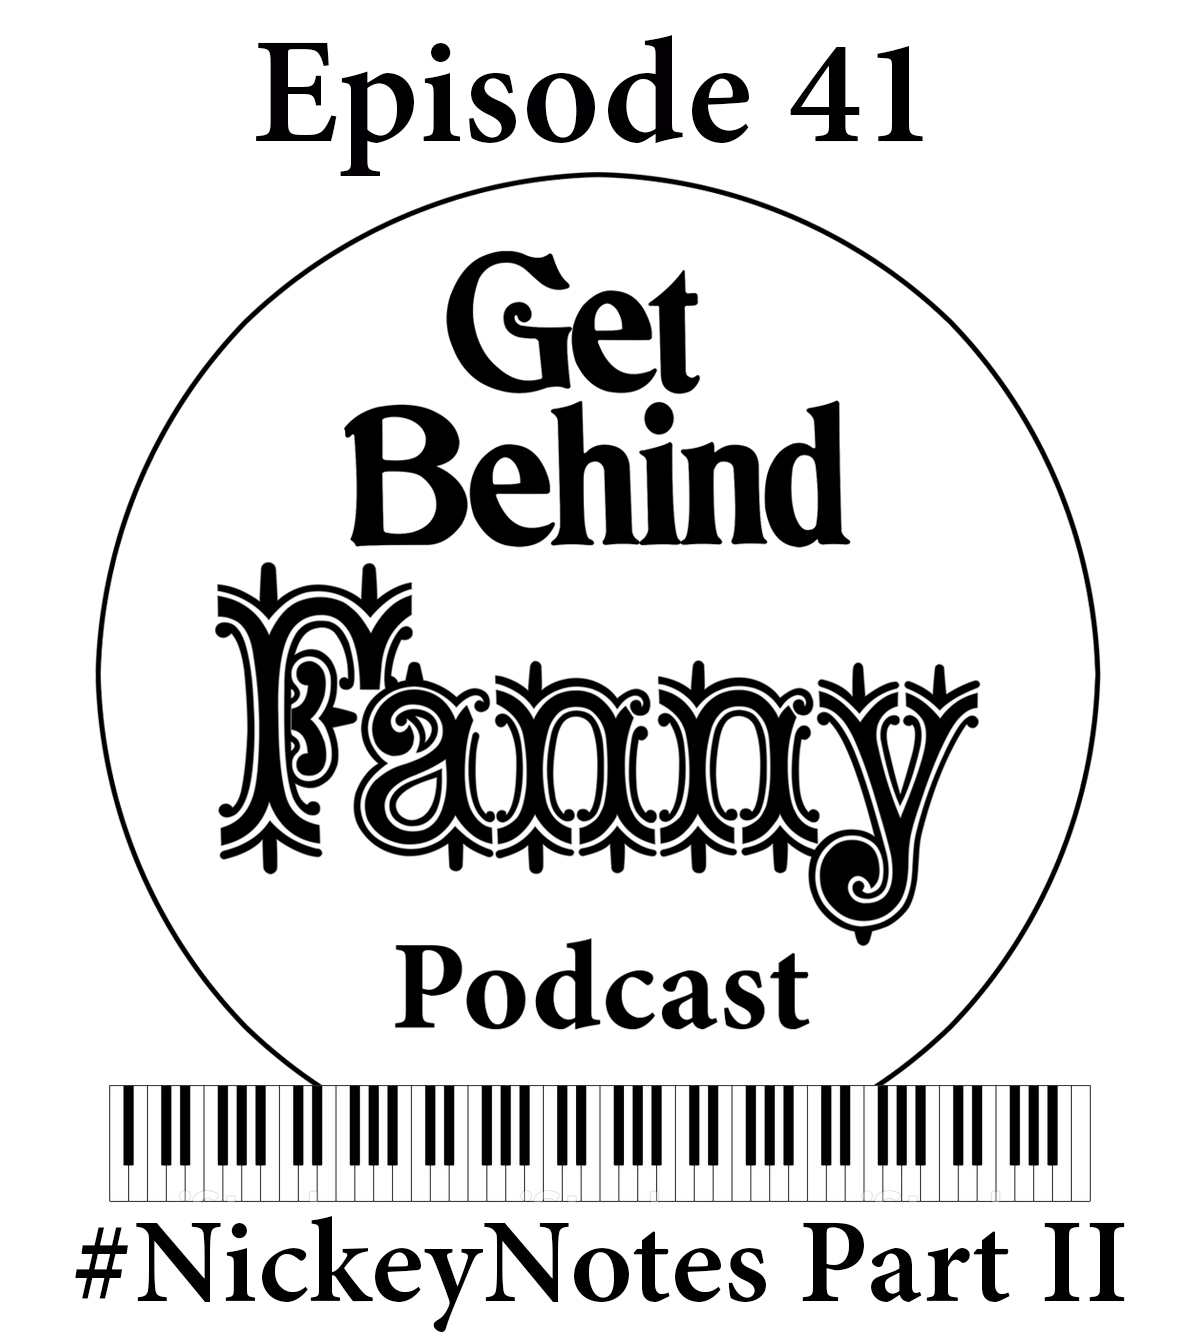 Get Behind Fanny: Episode 41